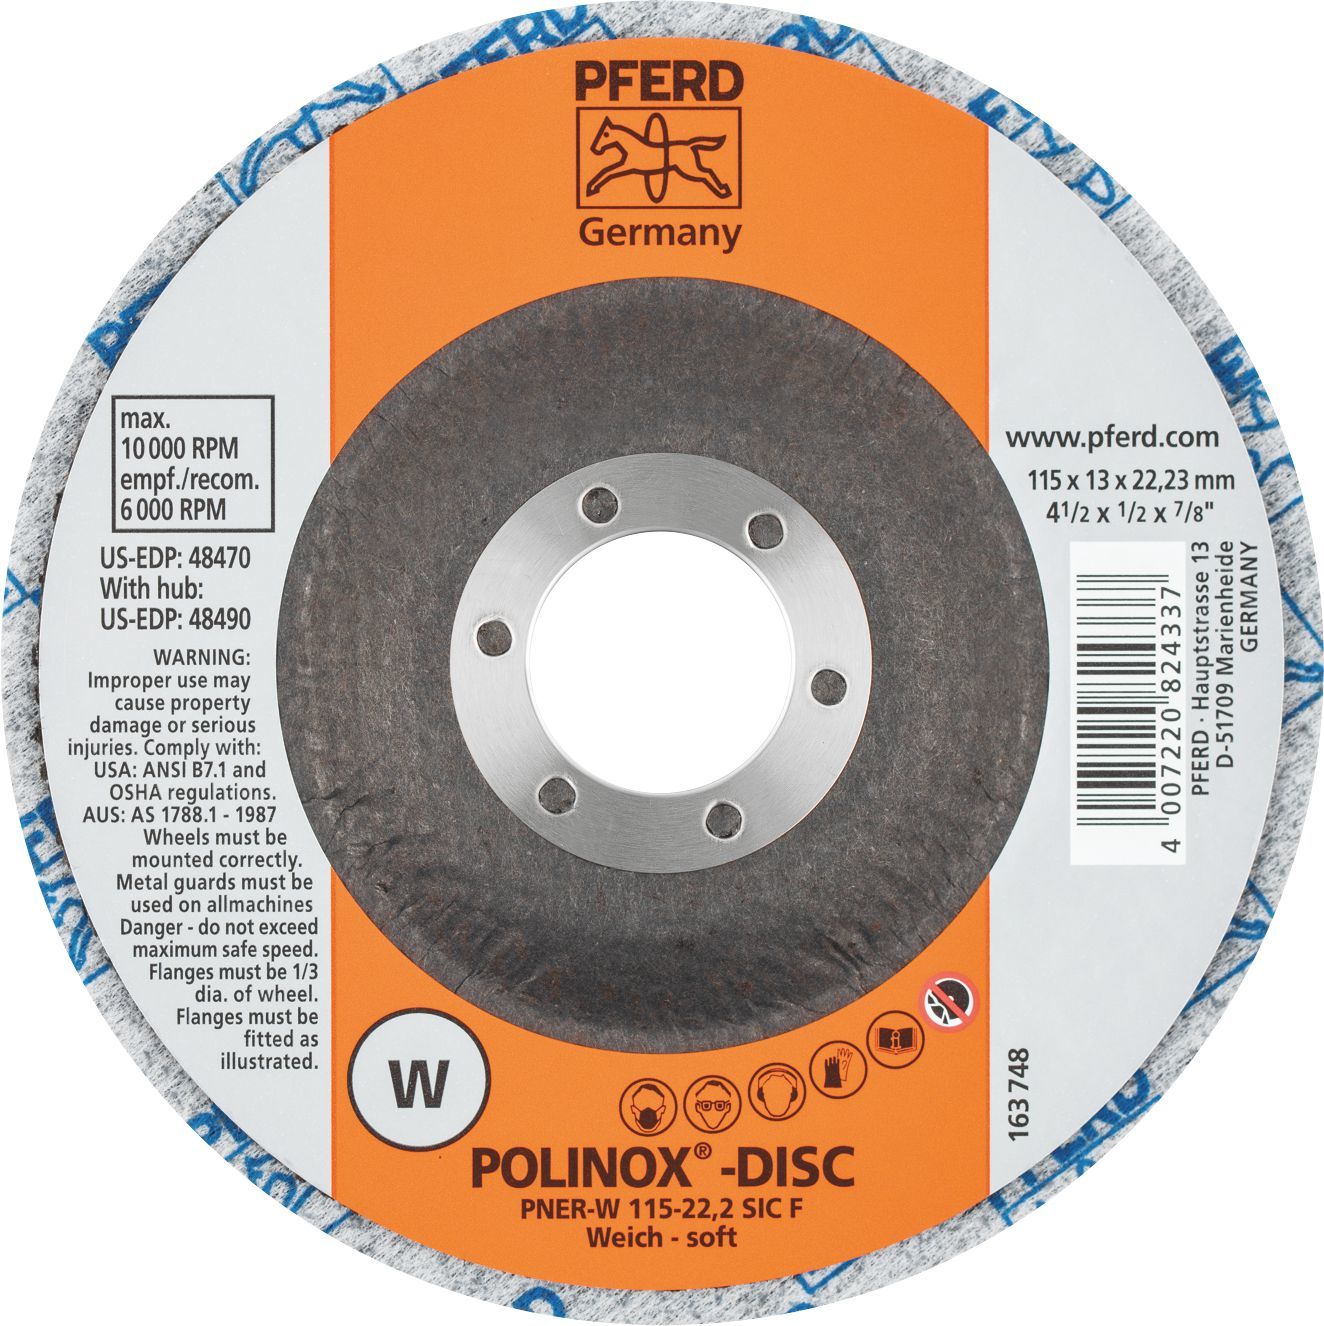 PFERD POLINOX WHEEL UNITIZED DISC PNER-W 115-22.2 C FINE 